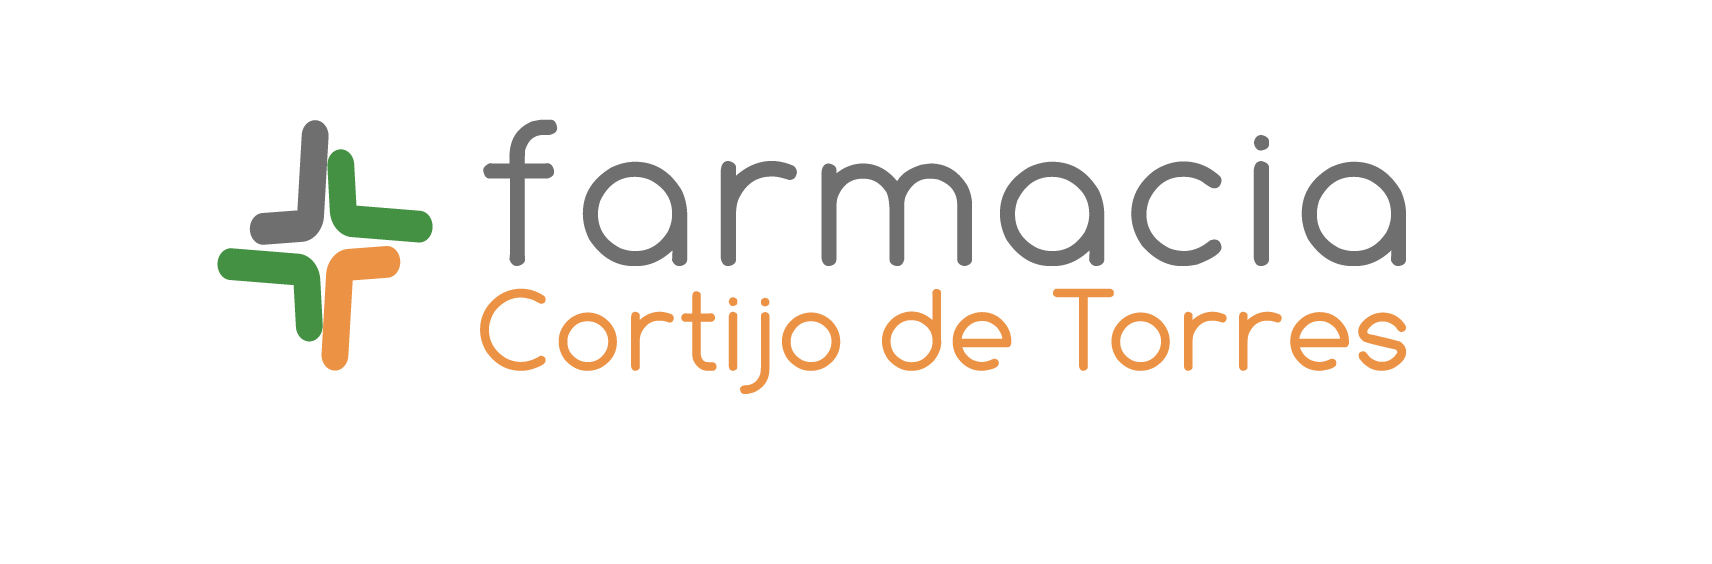 Farmacia Cortijo de Torres